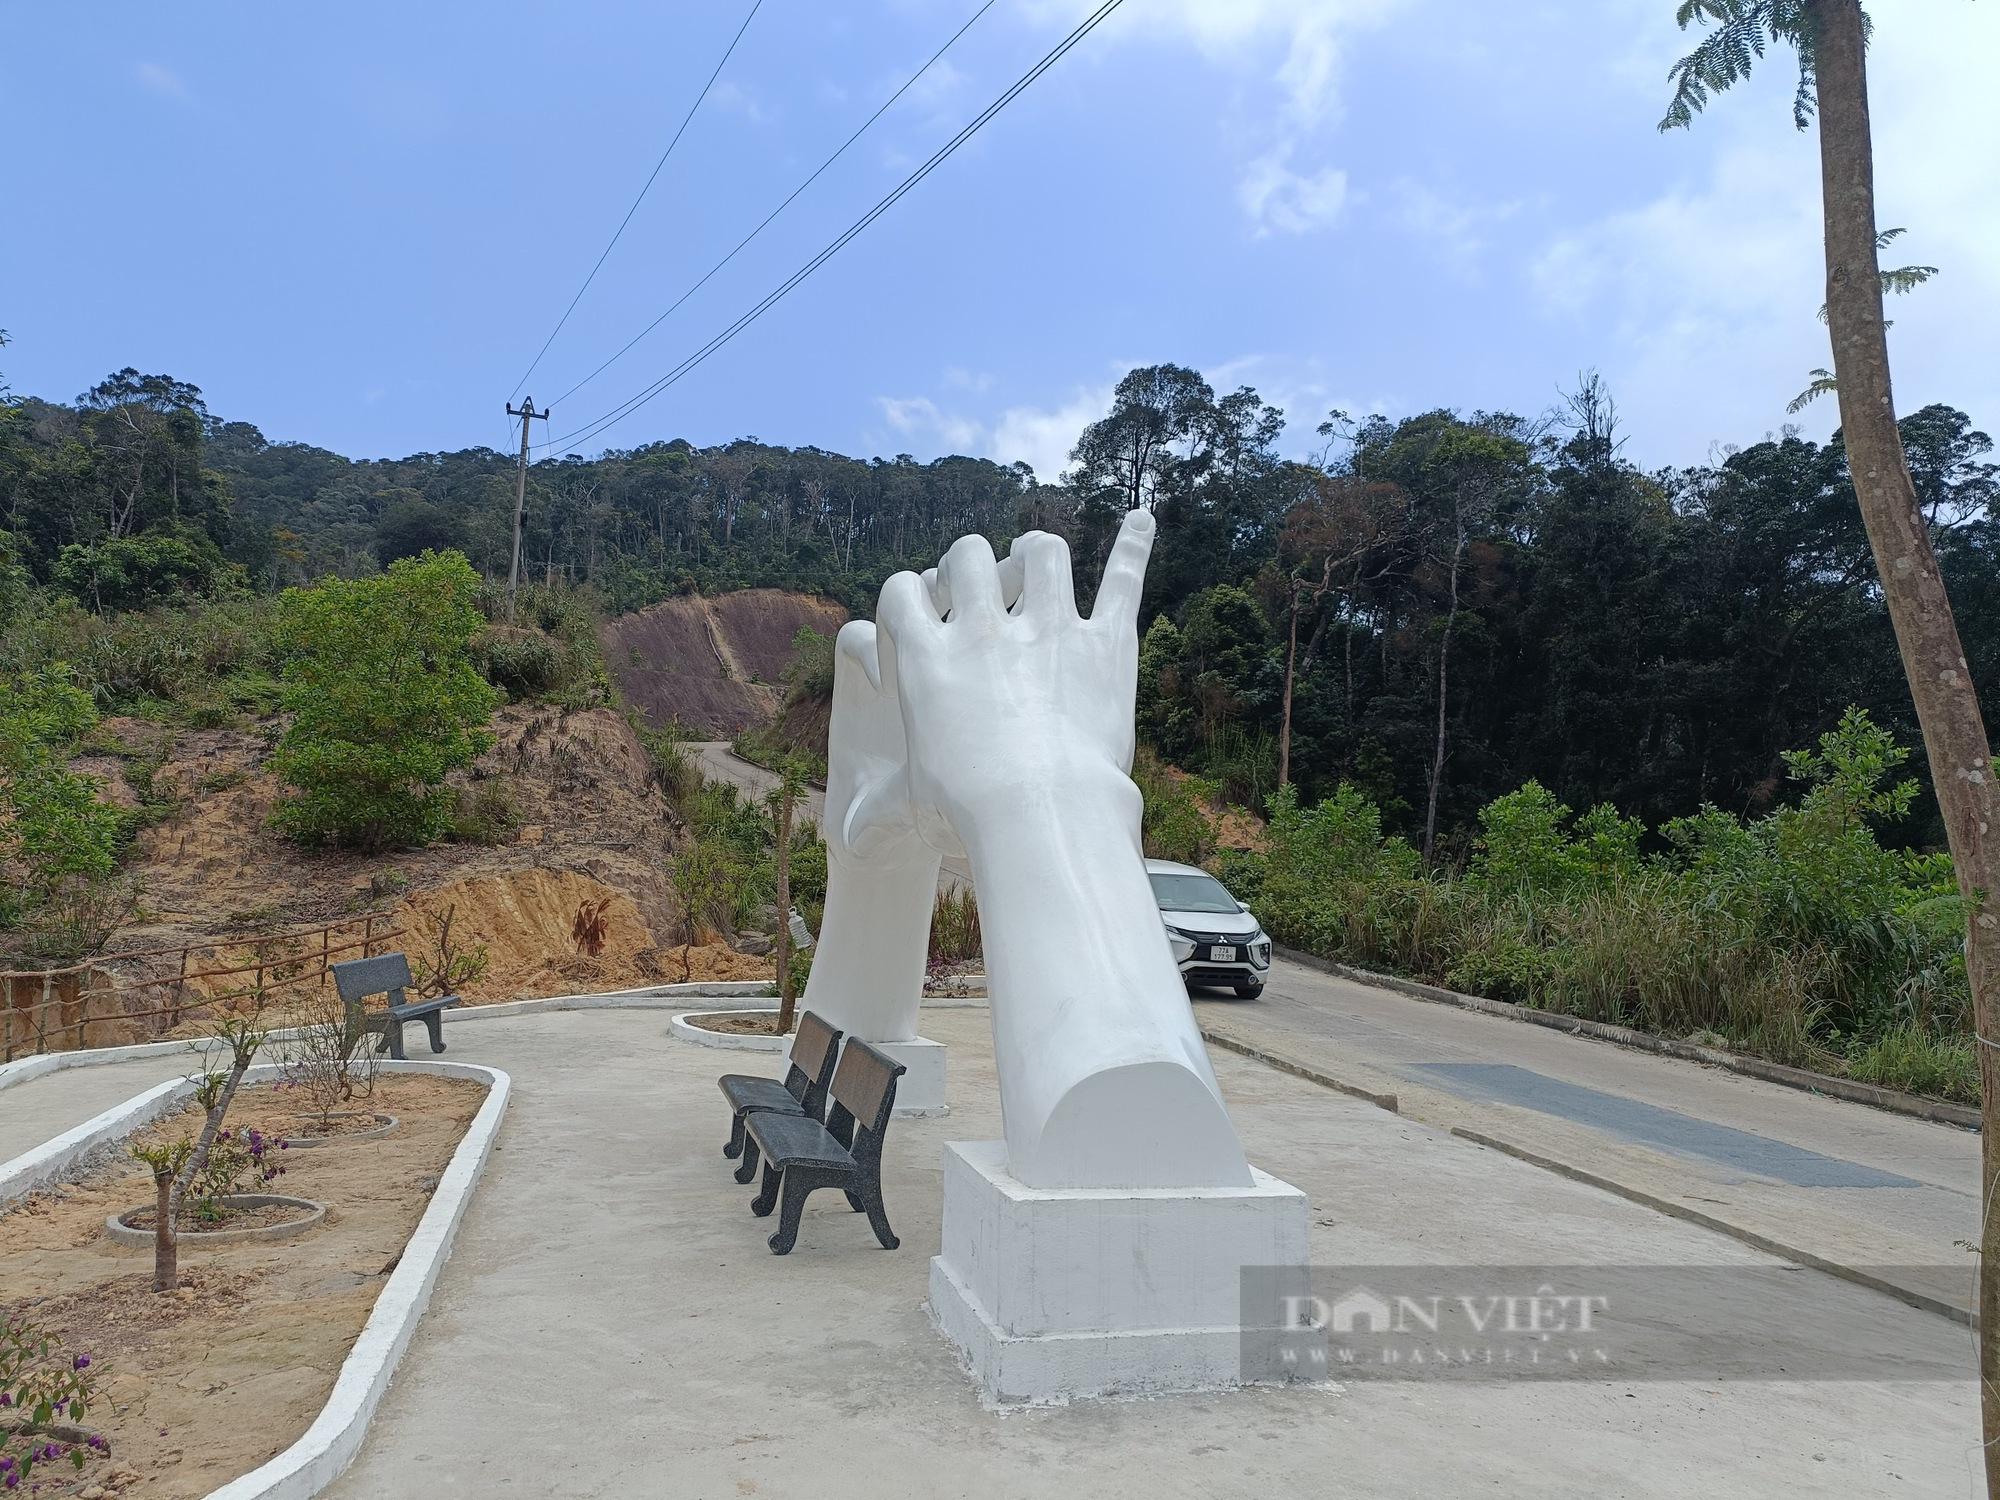 Xã đặc biệt khó khăn ở miền núi Bình Định chi ngân sách gần 500 triệu xây công trình 2 cánh tay- Ảnh 1.